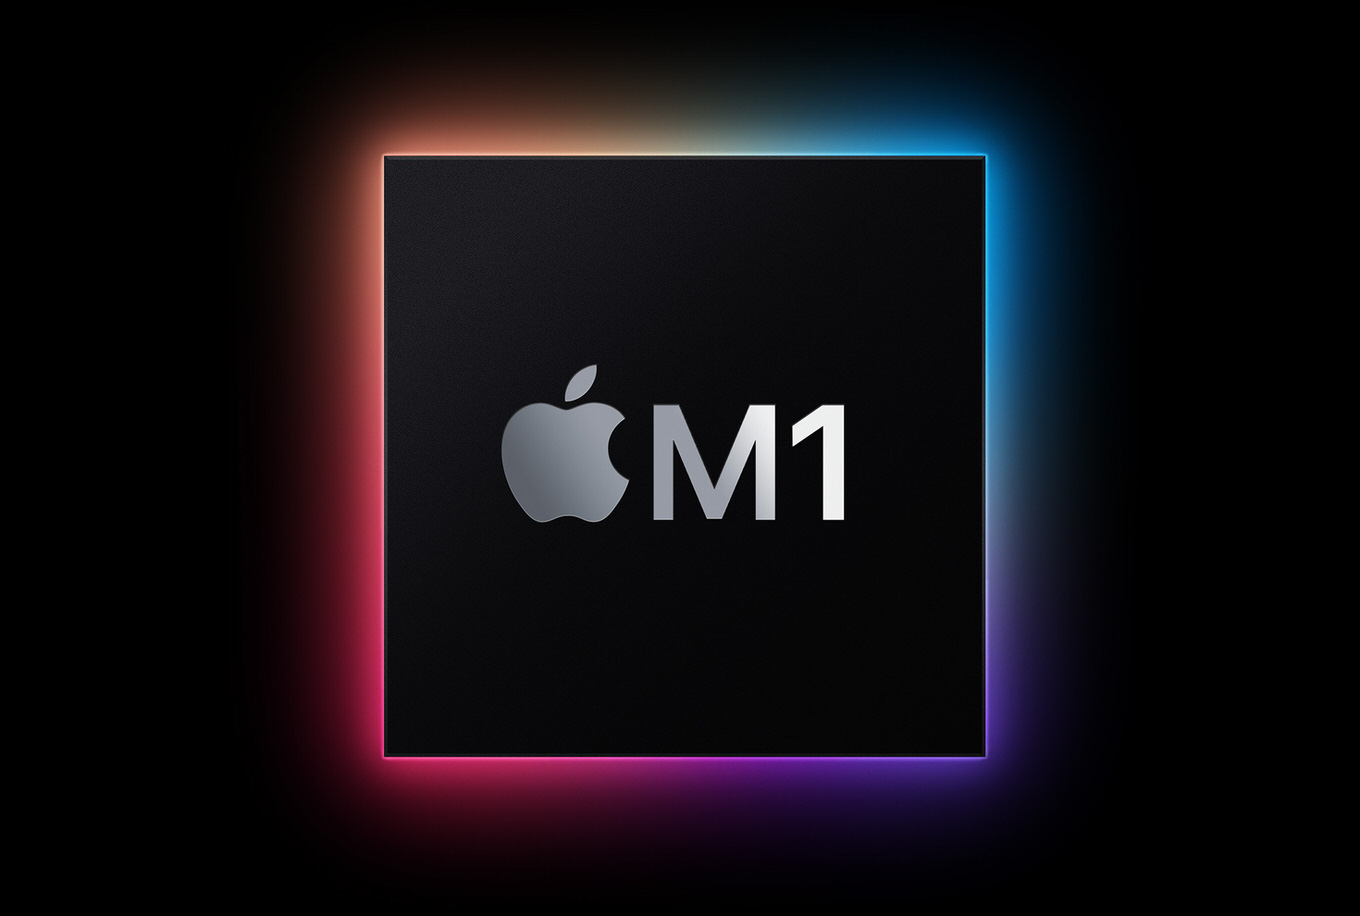 Appleシリコン「M1」登載の新型Mac3モデルを発表、macOS Big Surは11月12日にリリース